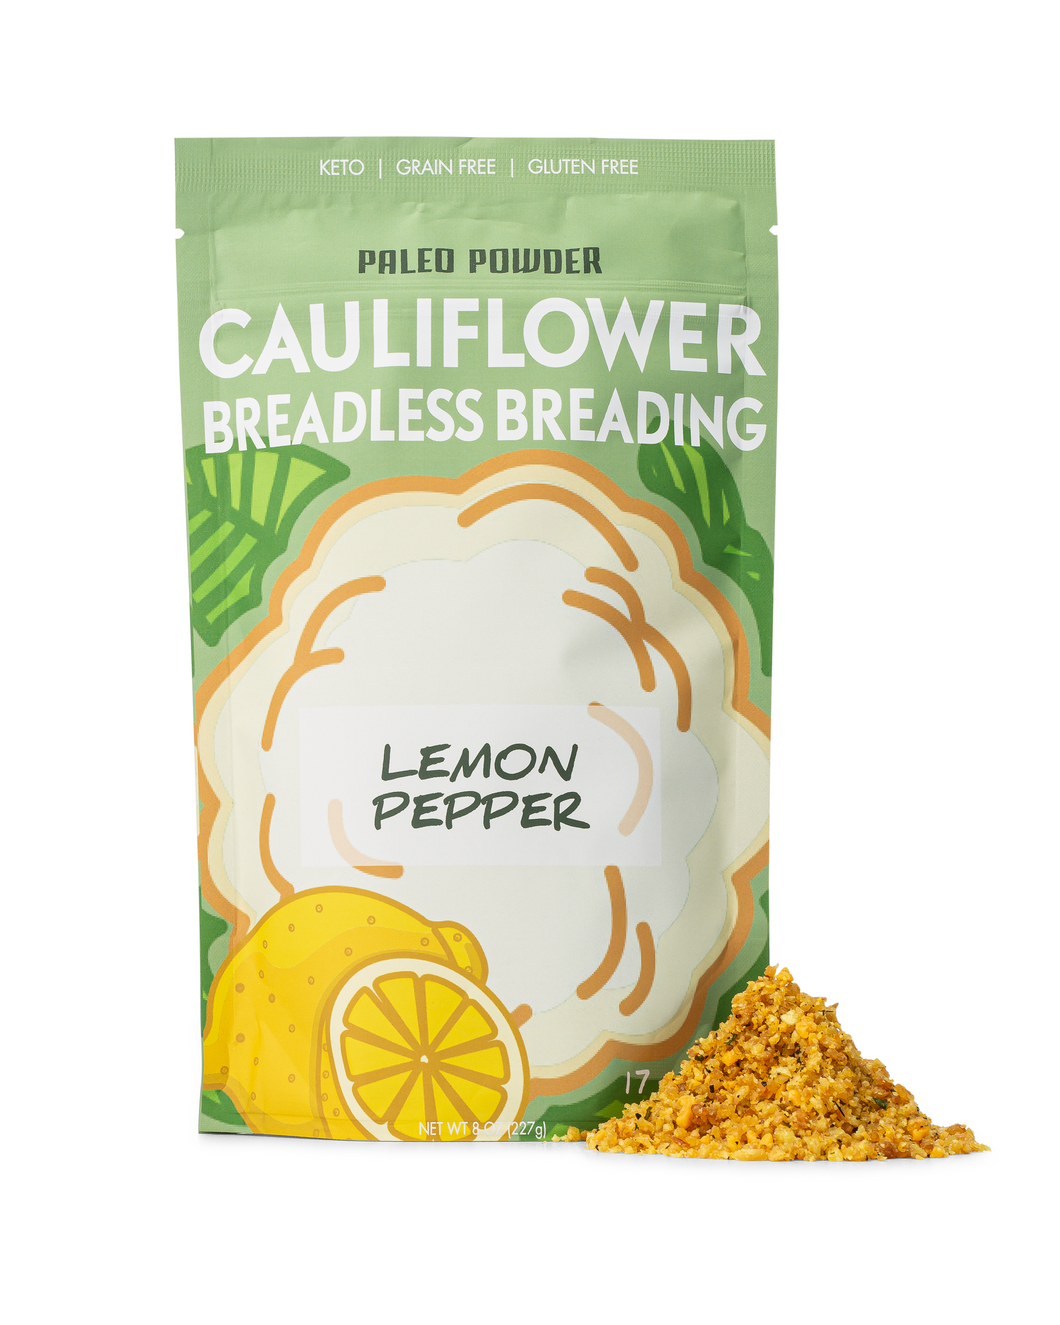 Cauliflower Breadless Breading - Lemon Pepper